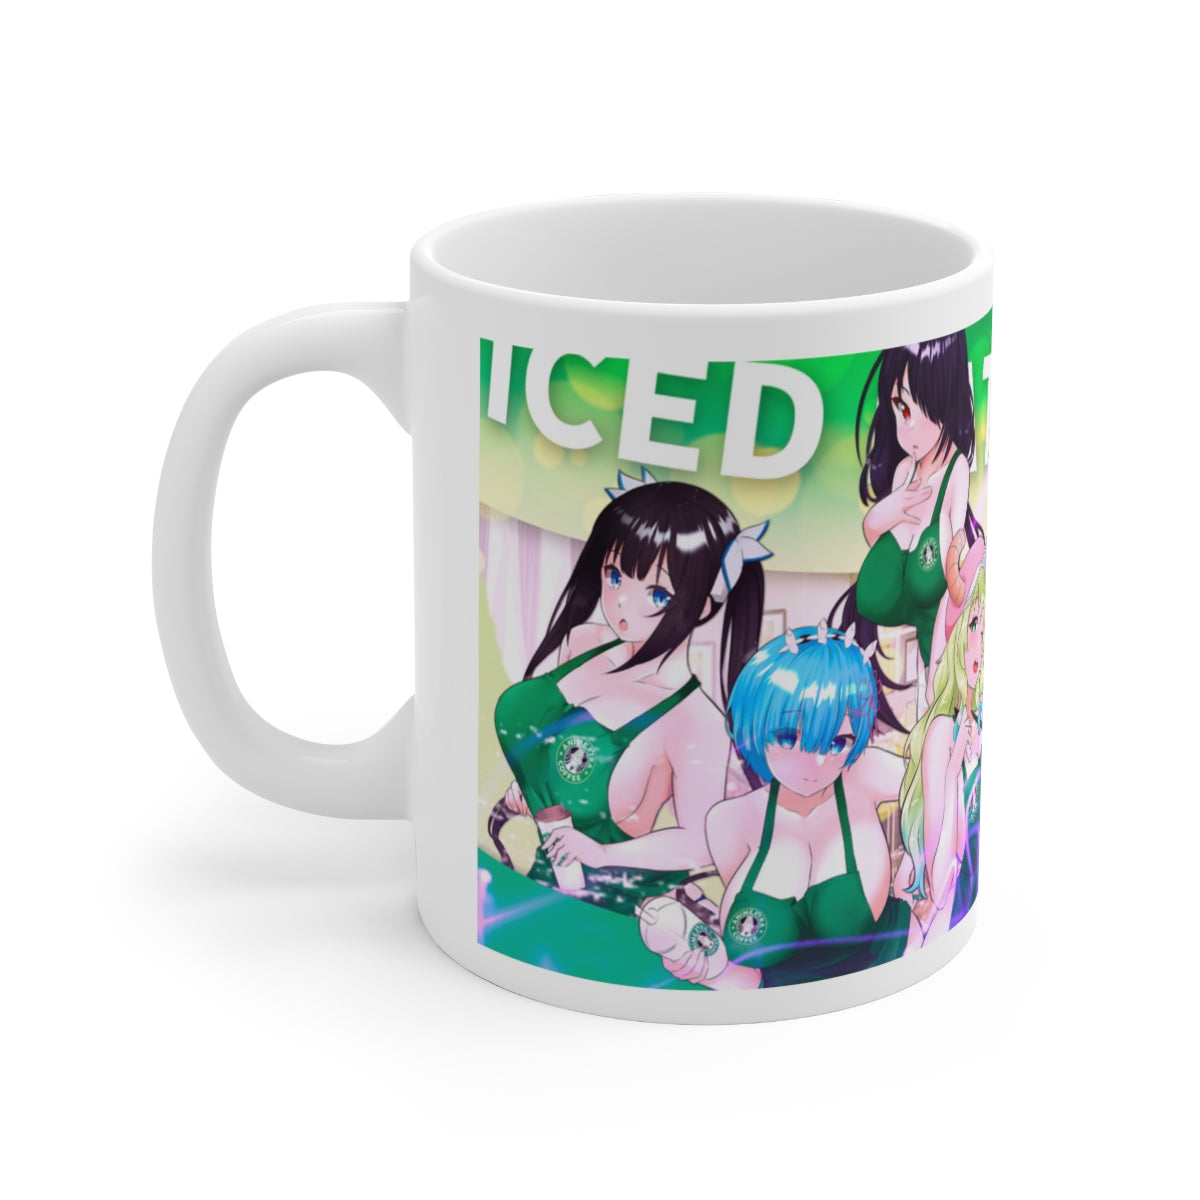 Iced Latte Waifus Coffee Mugs